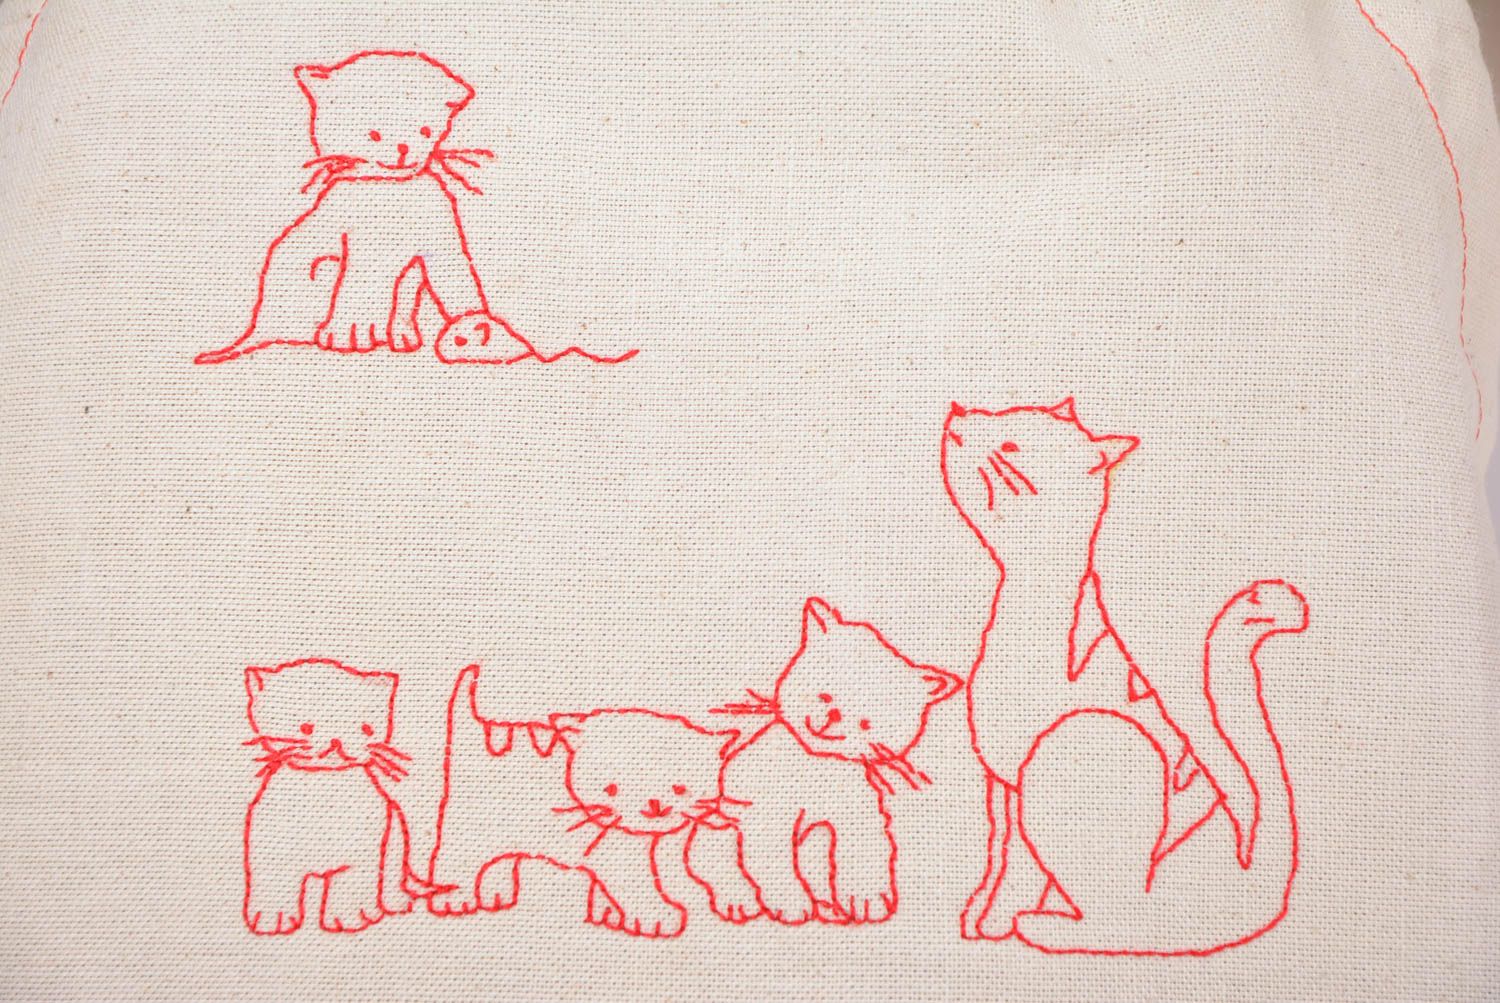 Textil Schürze für Frauen aus Halbleinen mit Stickerei weiß handmade Katzen foto 3